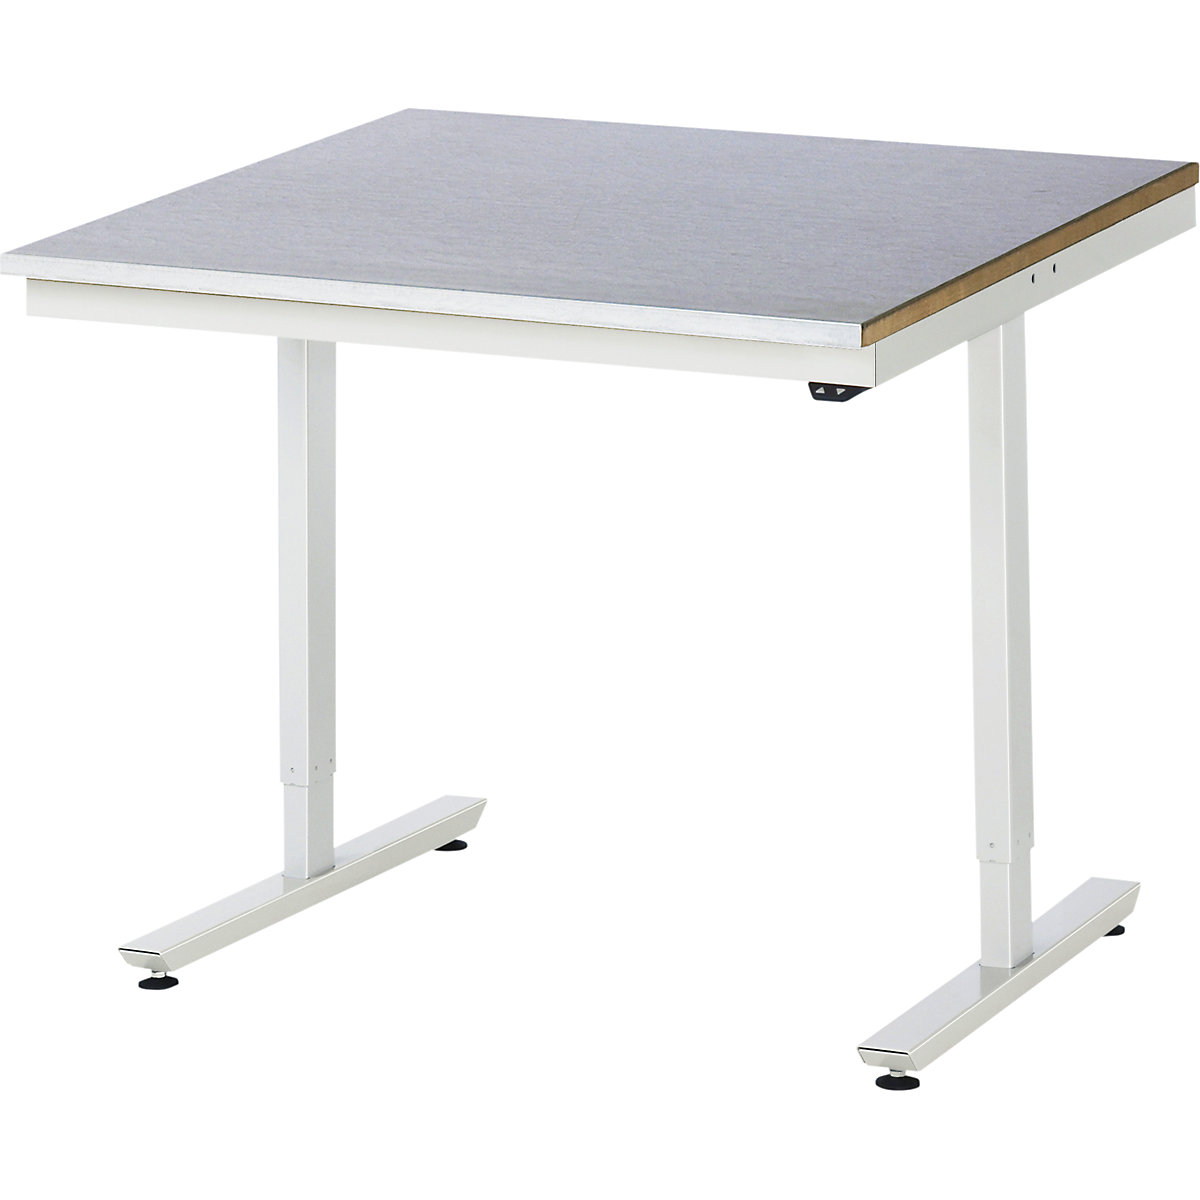 Psací stůl s elektrickým přestavováním výšky – RAU, ocelový povlak, nosnost 150 kg, š x h 1000 x 1000 mm-9